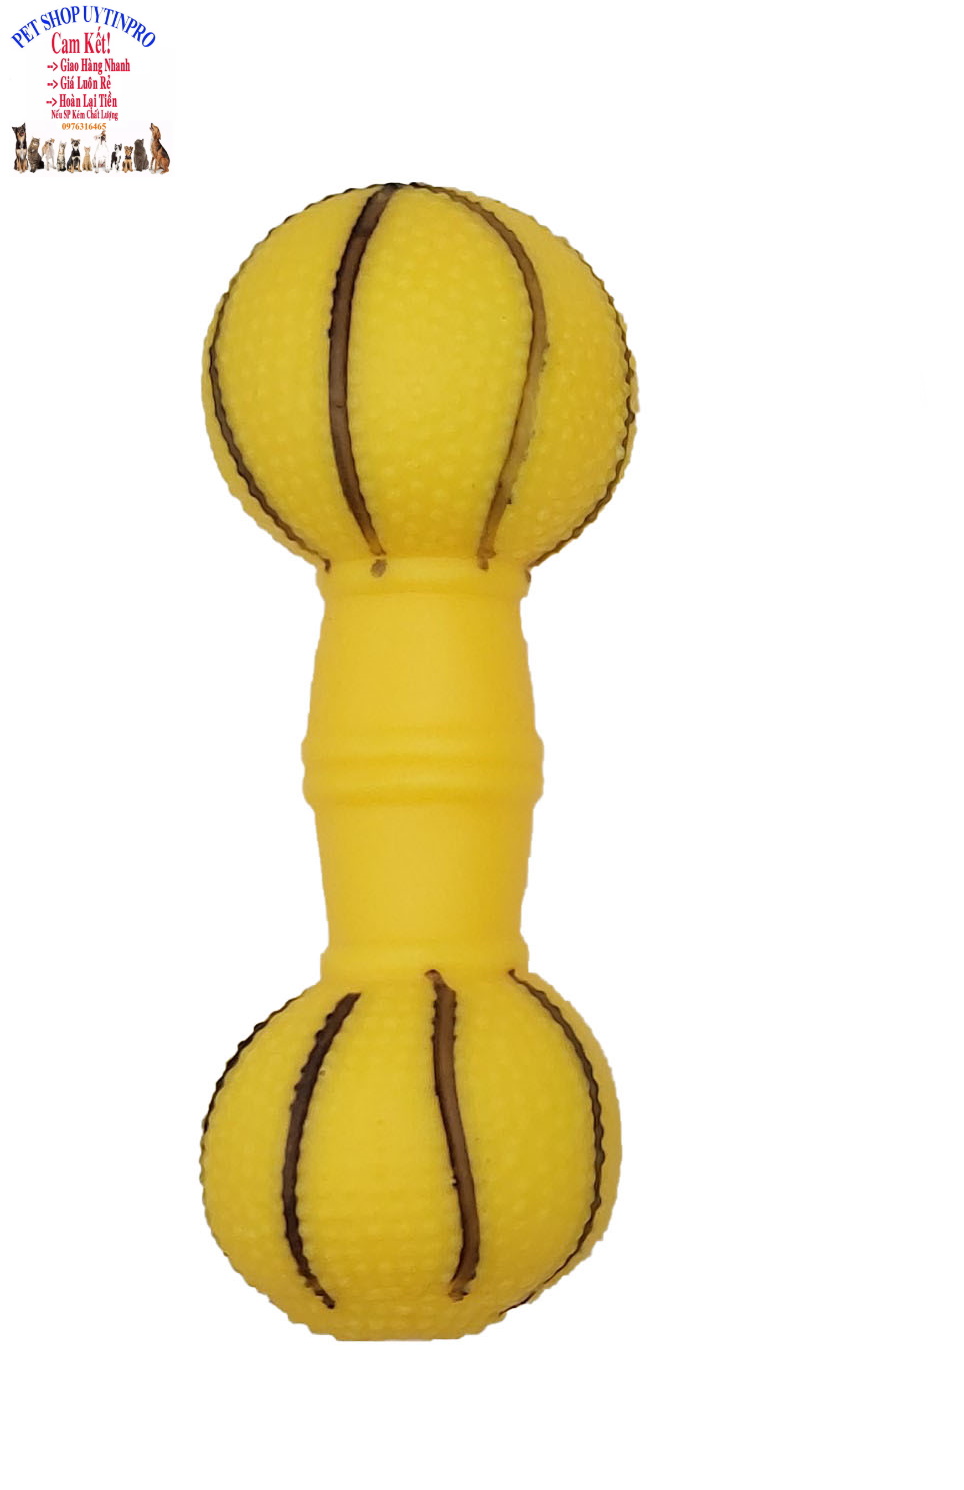 Đồ chơi cho Chó Hình quả tạ Dài 16cm In hình bóng bowling Phát ra tiếng kêu Chất liệu nhựa dẻo, Giúp thú cưng sảng khoái